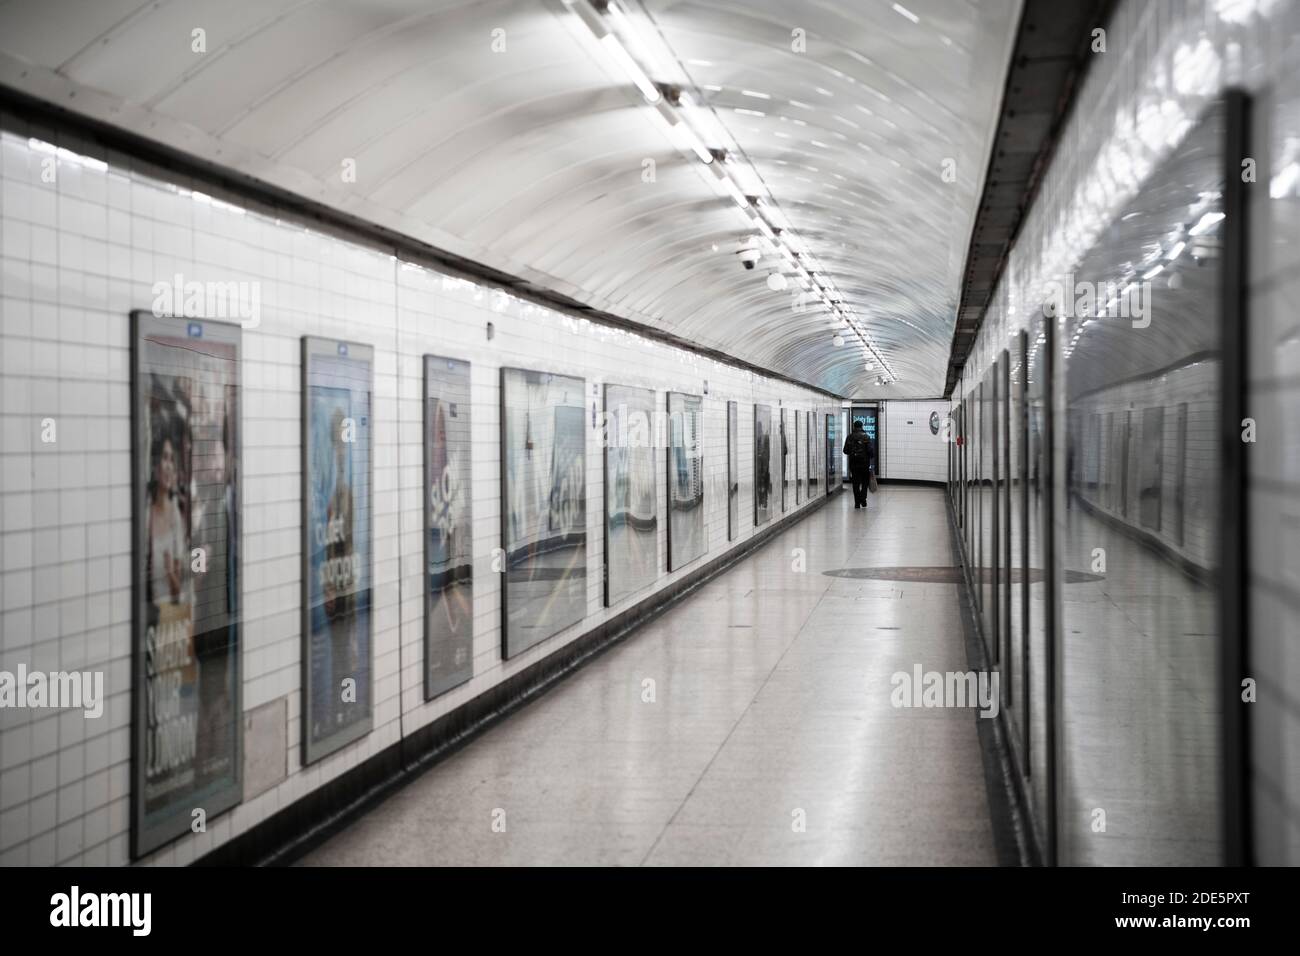 Ruhige, leere Londoner U-Bahn-Station in Coronavirus Covid-19 Pandemiesperre, mit einer einzigen Person im öffentlichen Verkehr, wenn Züge während des Reiseverbots reduziert wurden Stockfoto